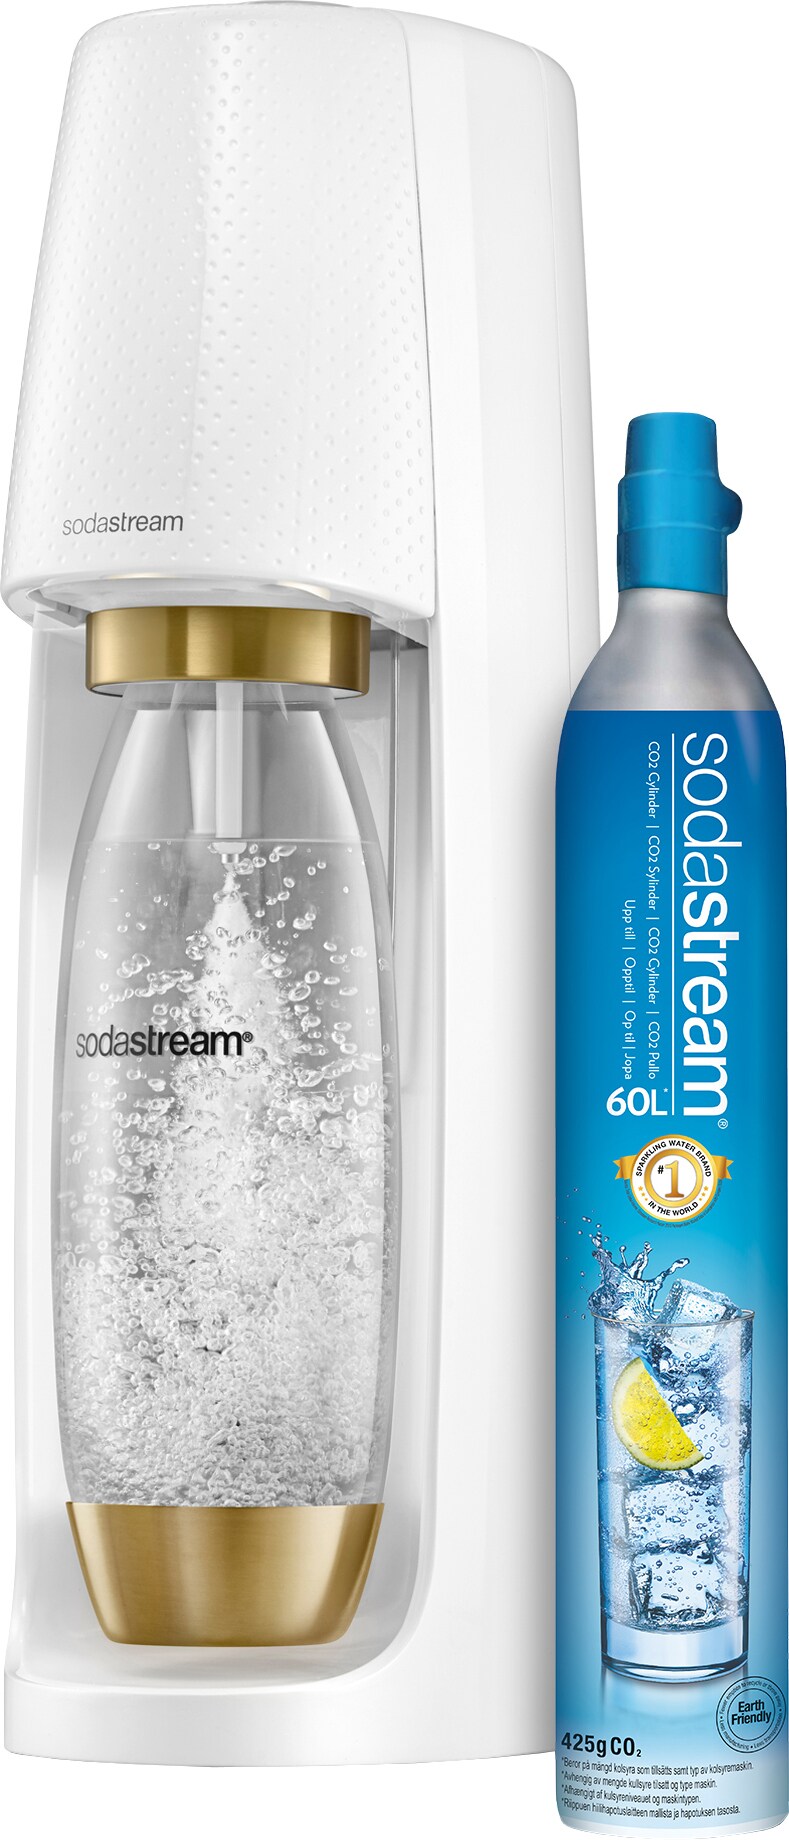 SodaStream Spirit White Gold kullsyremaskin 1011711774 - Elkjøp